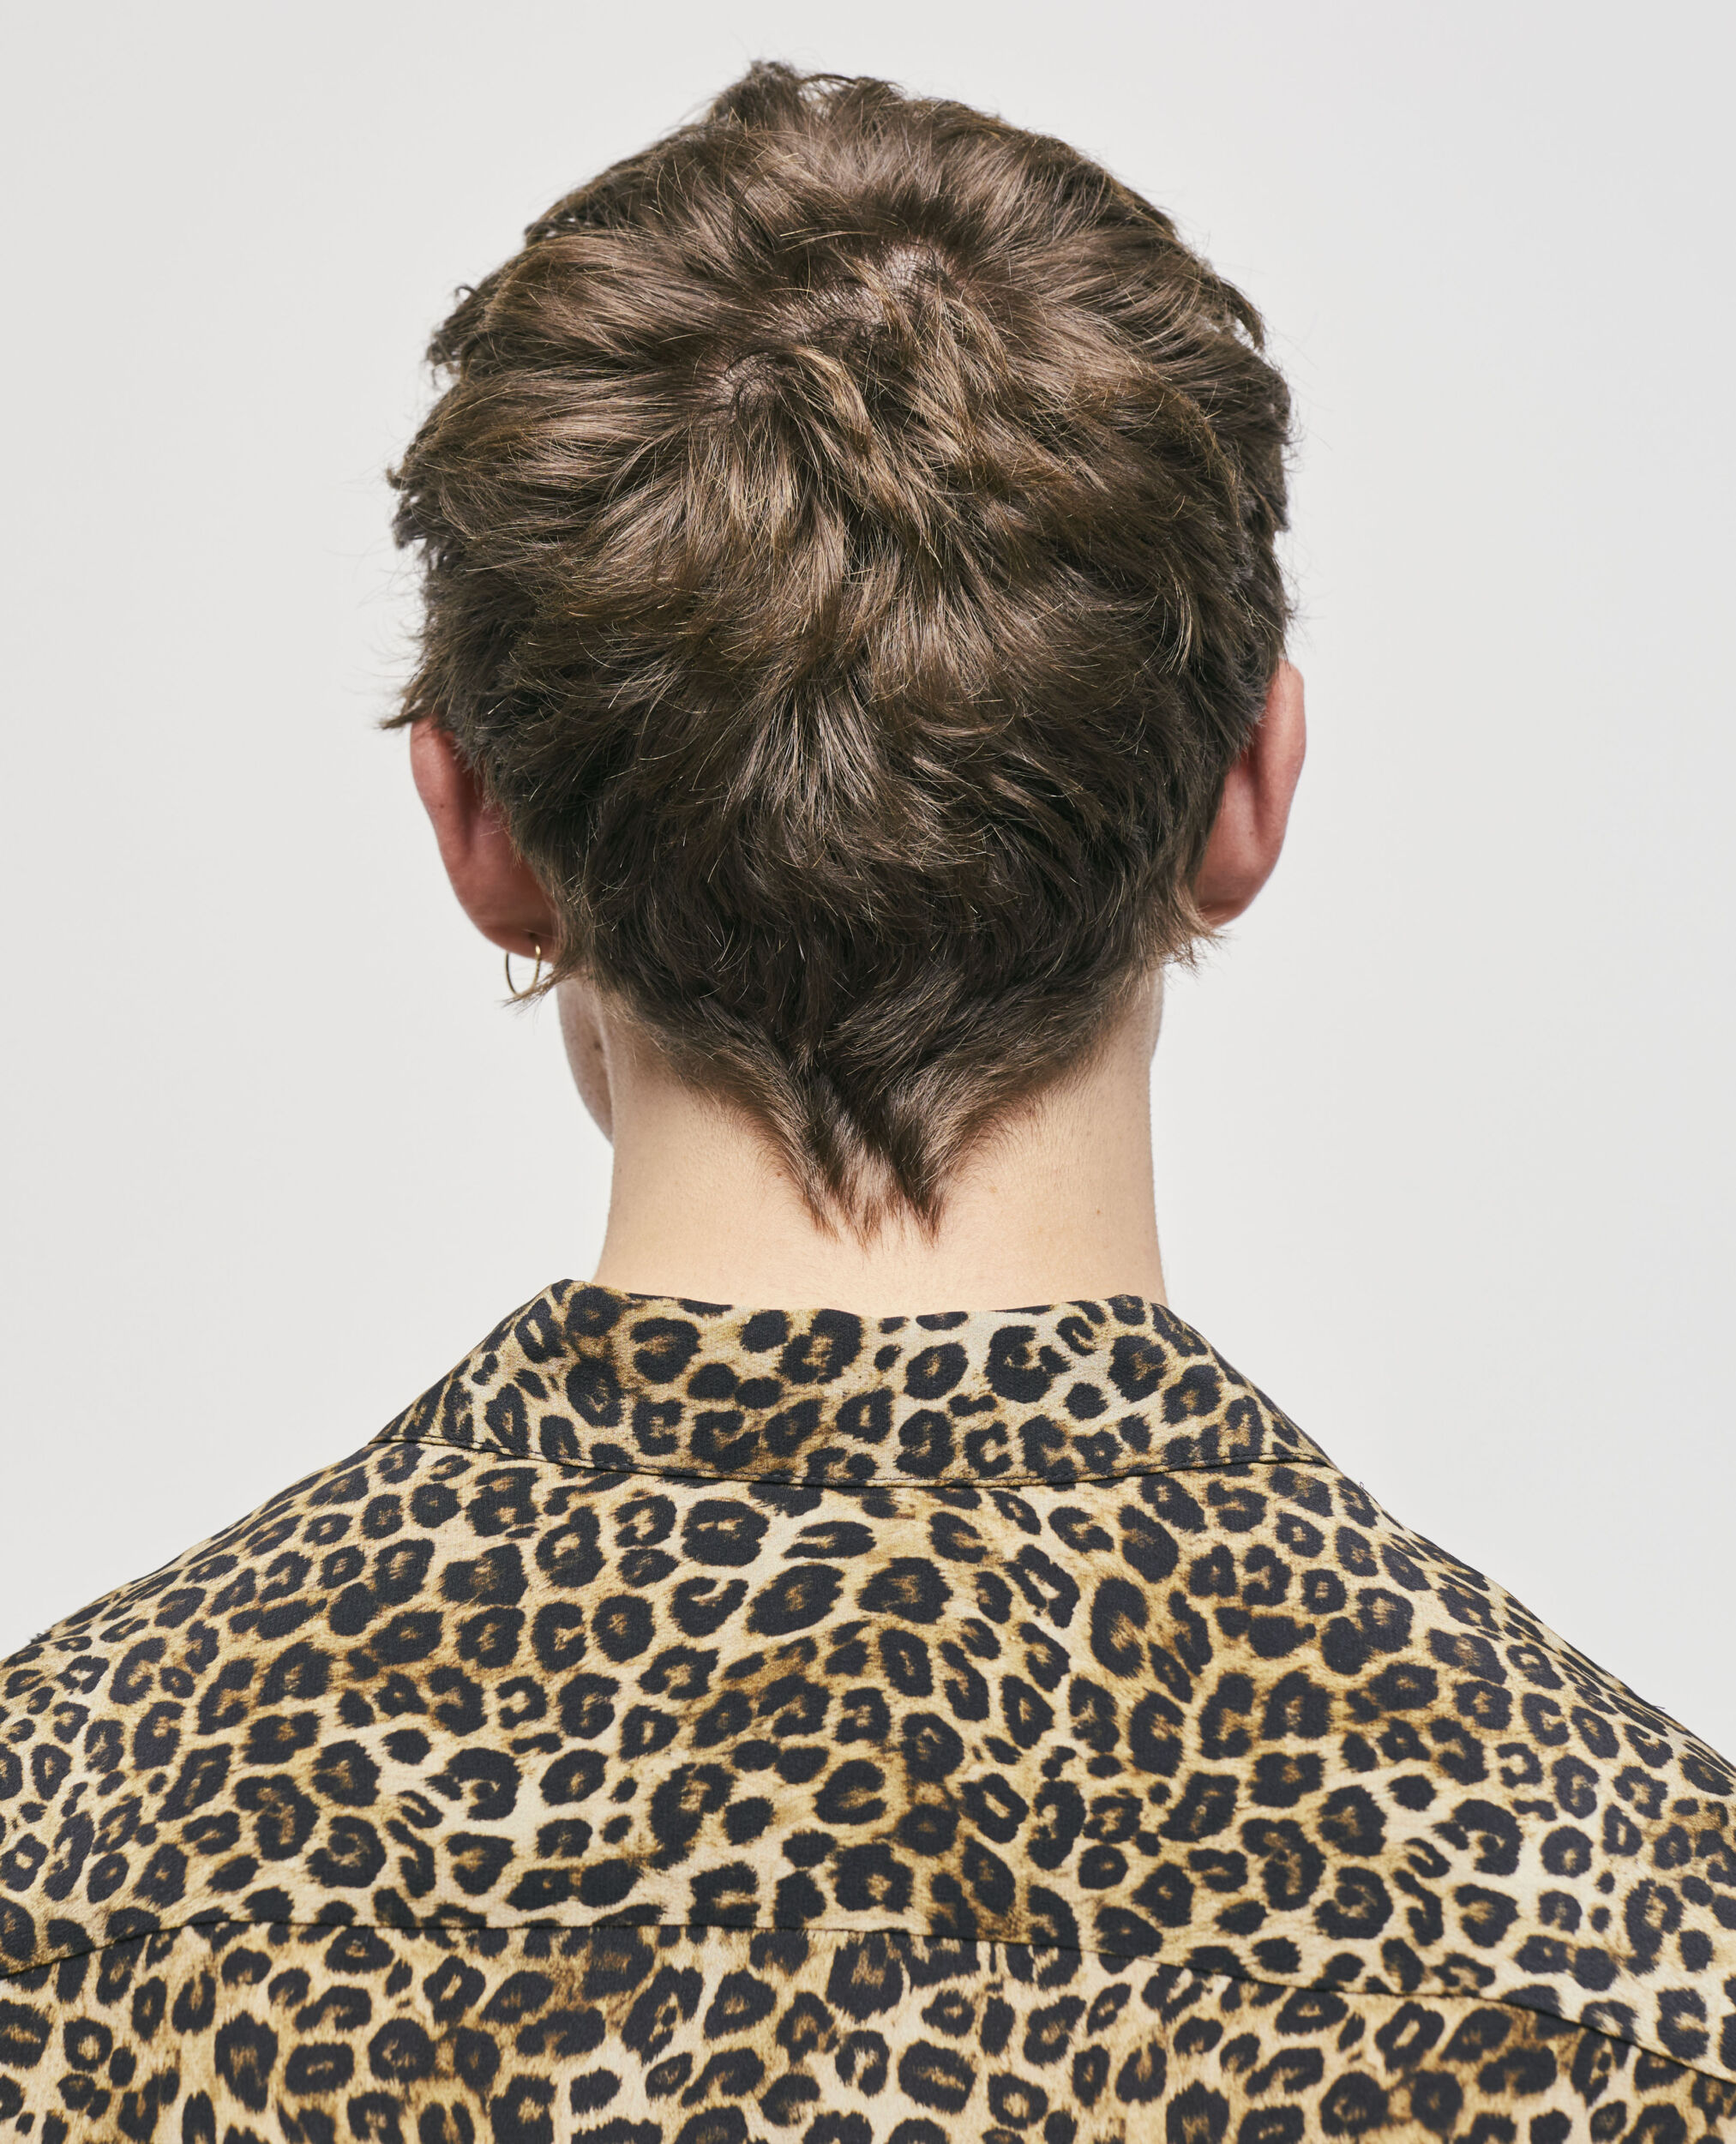 Camisa de seda leopardo con cuello clásico, LEOPARD, hi-res image number null